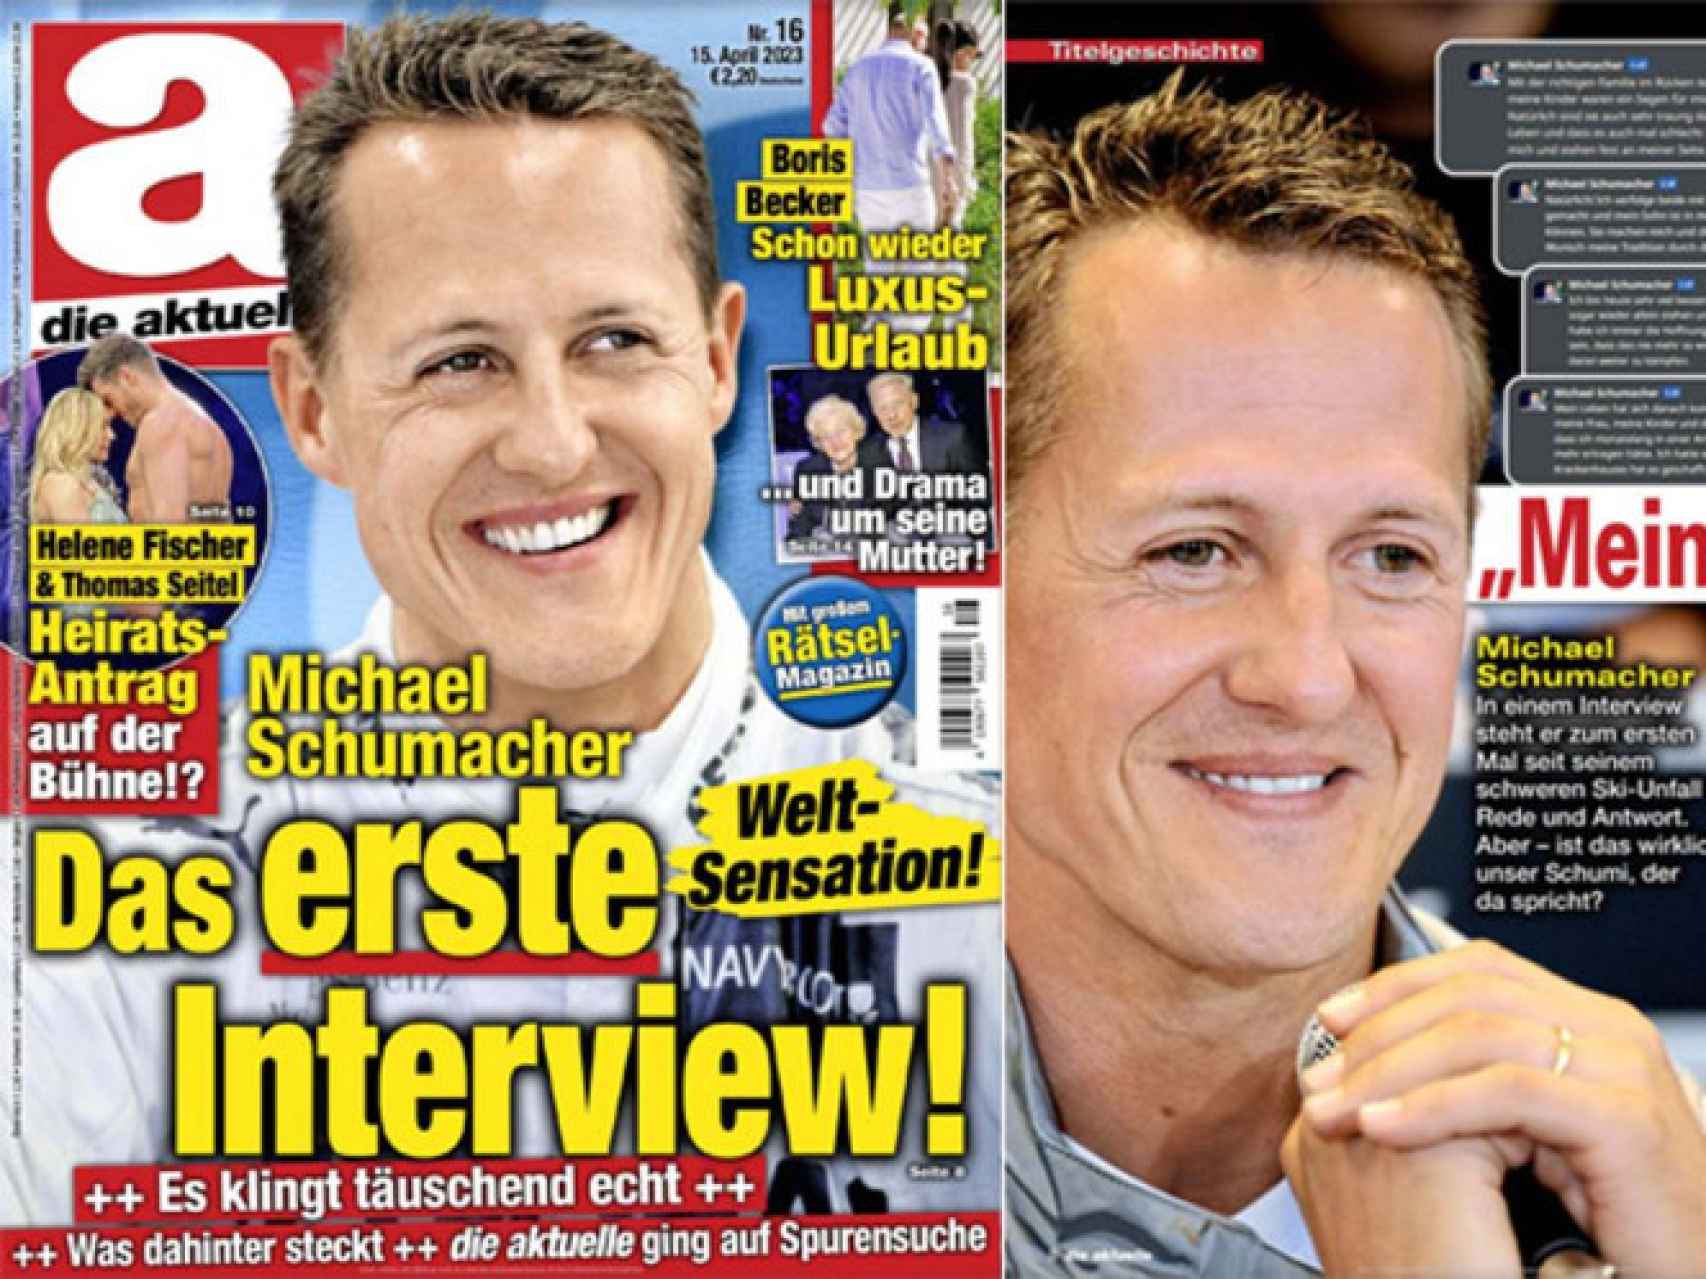 Portada y fragmento de la engañosa entrevista a Michael Schumacher